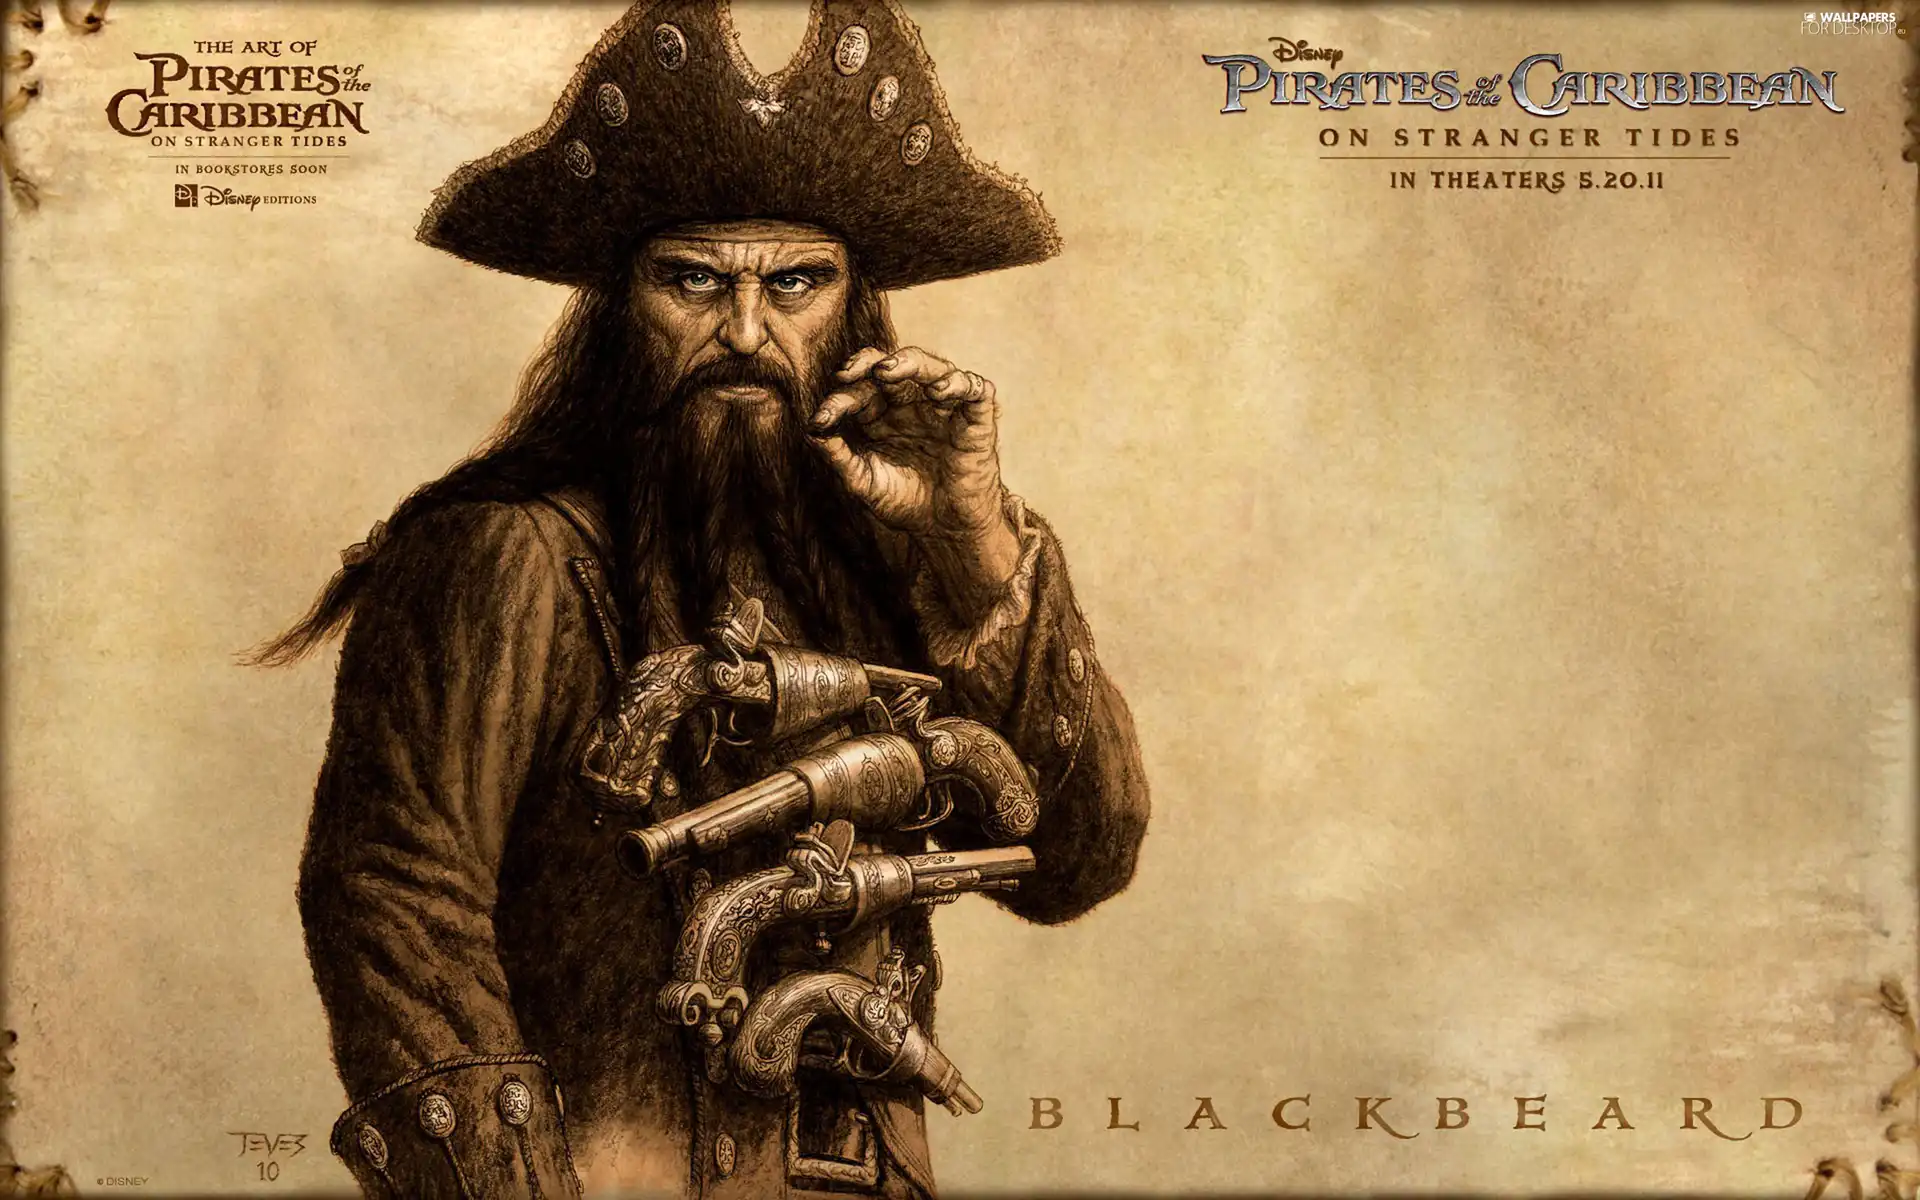 Pirates Of The Caribbean On Stranger Tides, Blackbeard